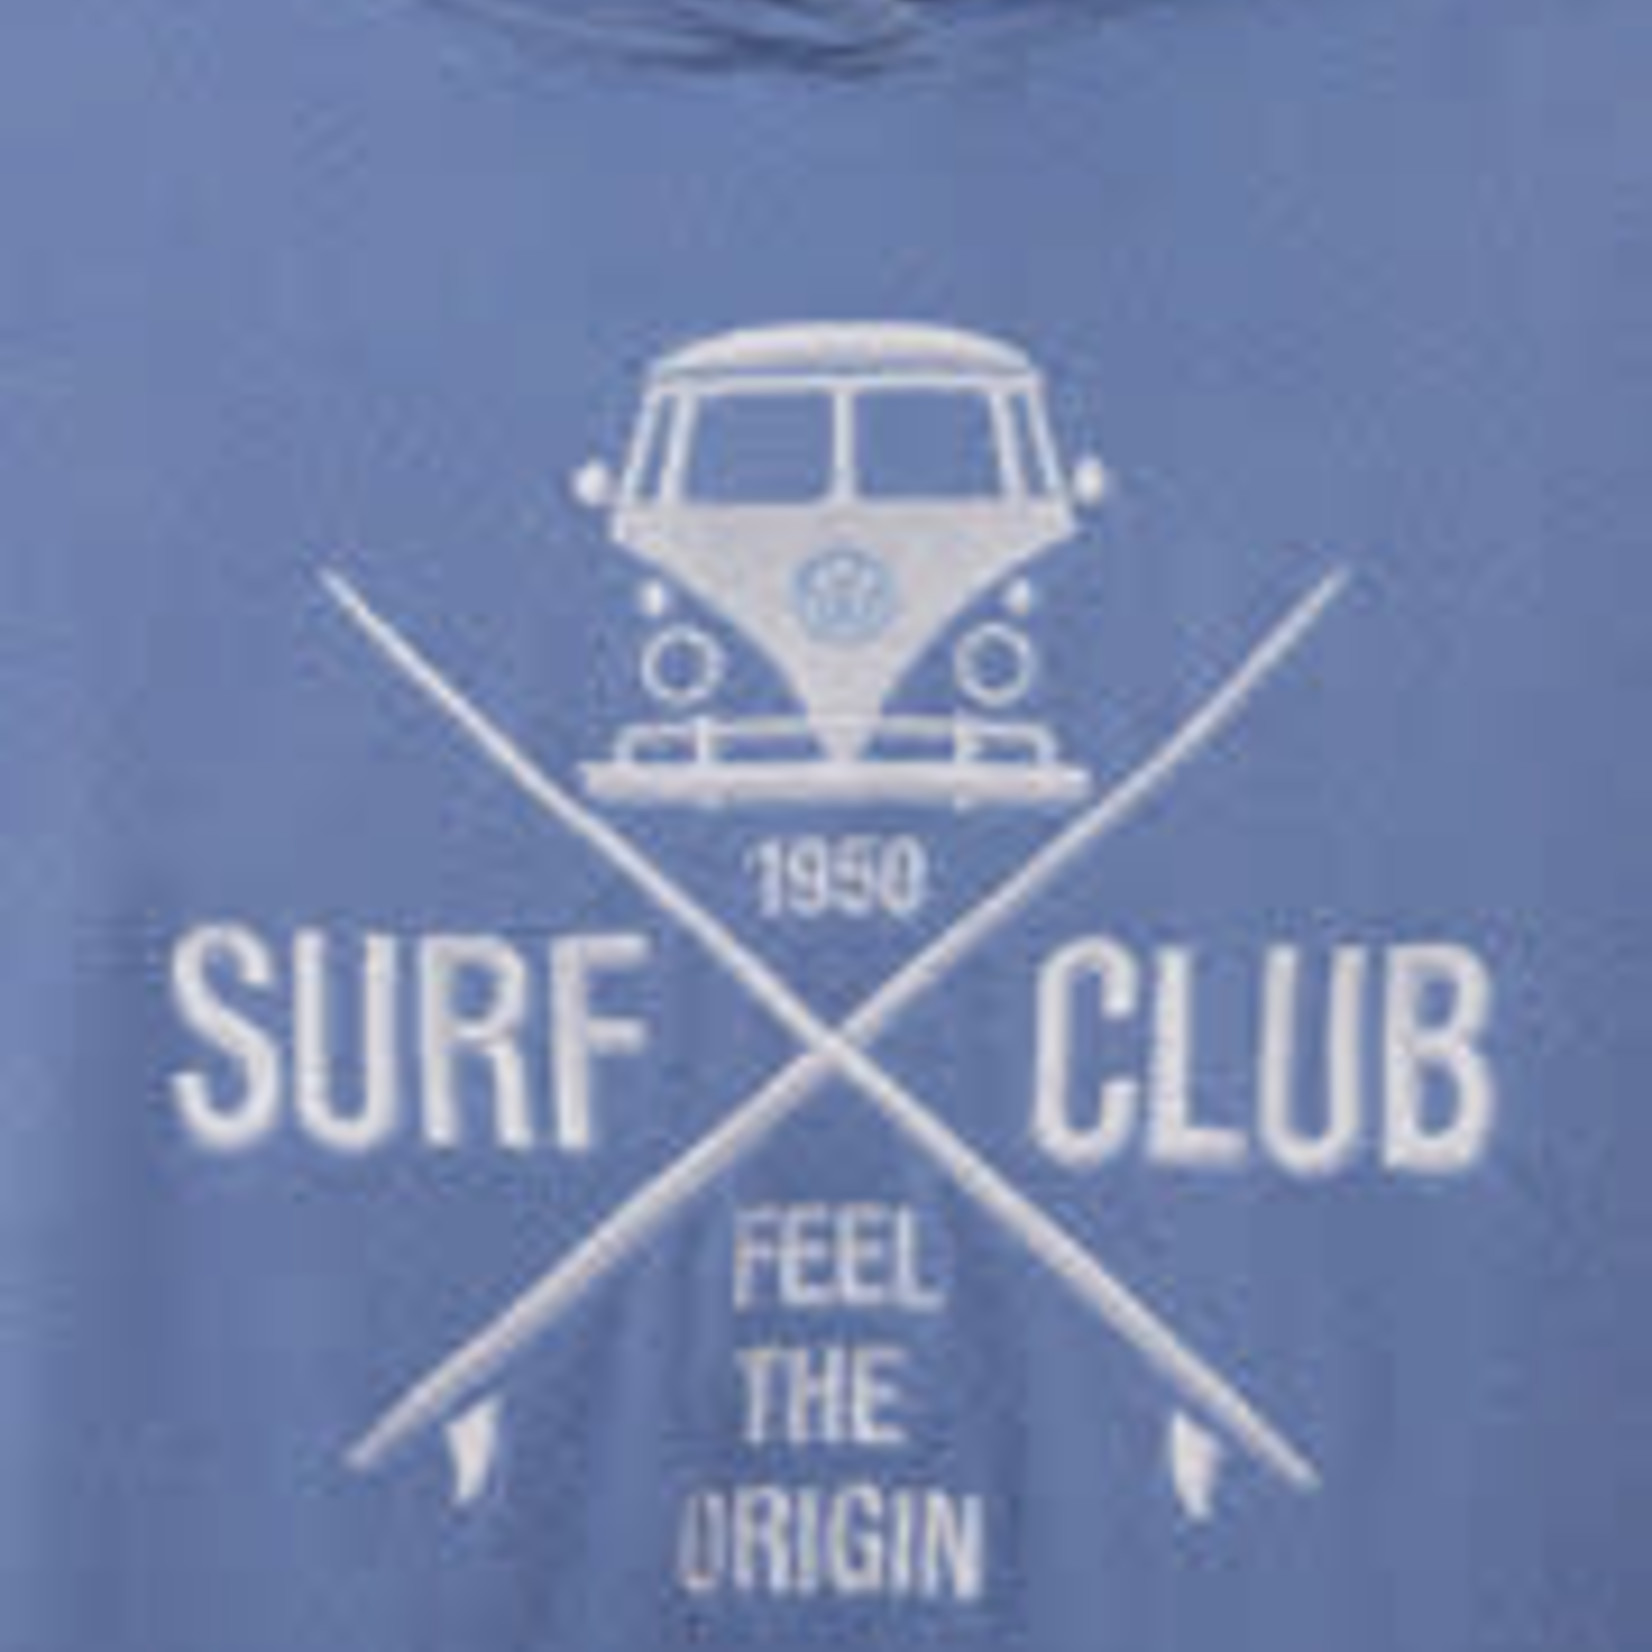 Vanone SURF CLUB - Sweat - VAN ONE